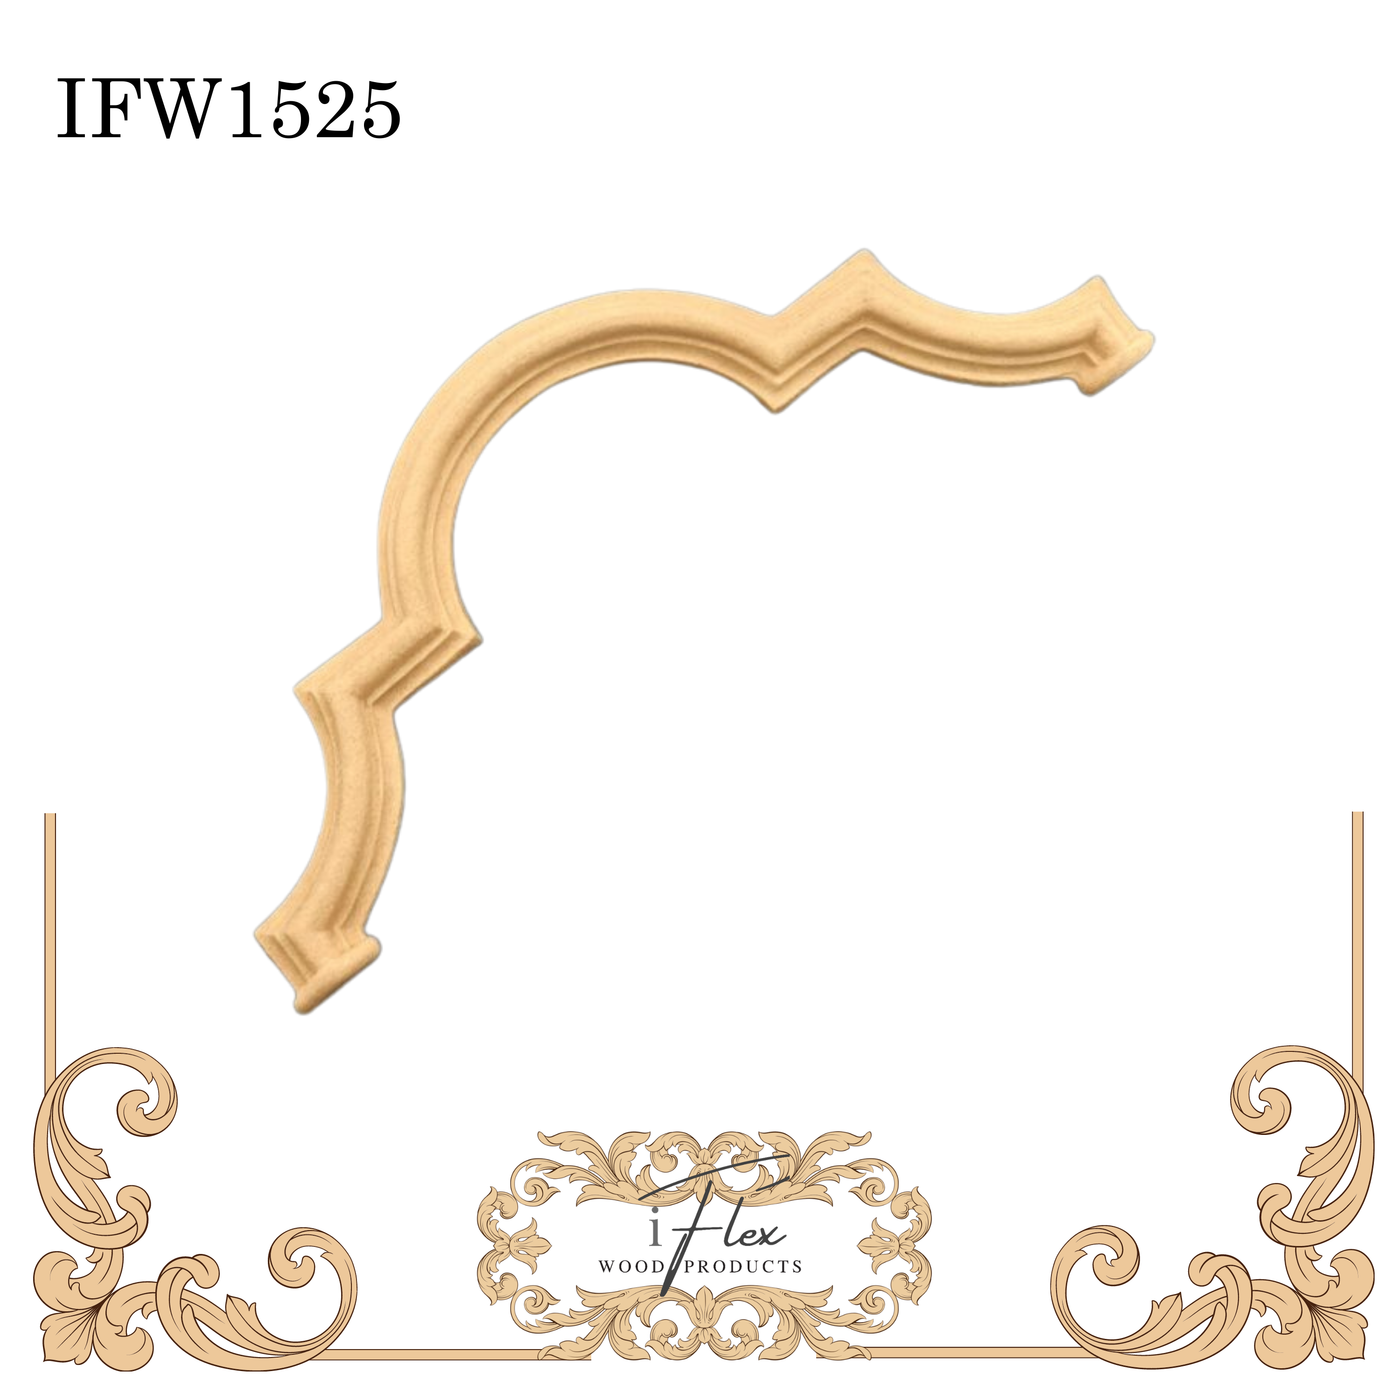 IFW 1525